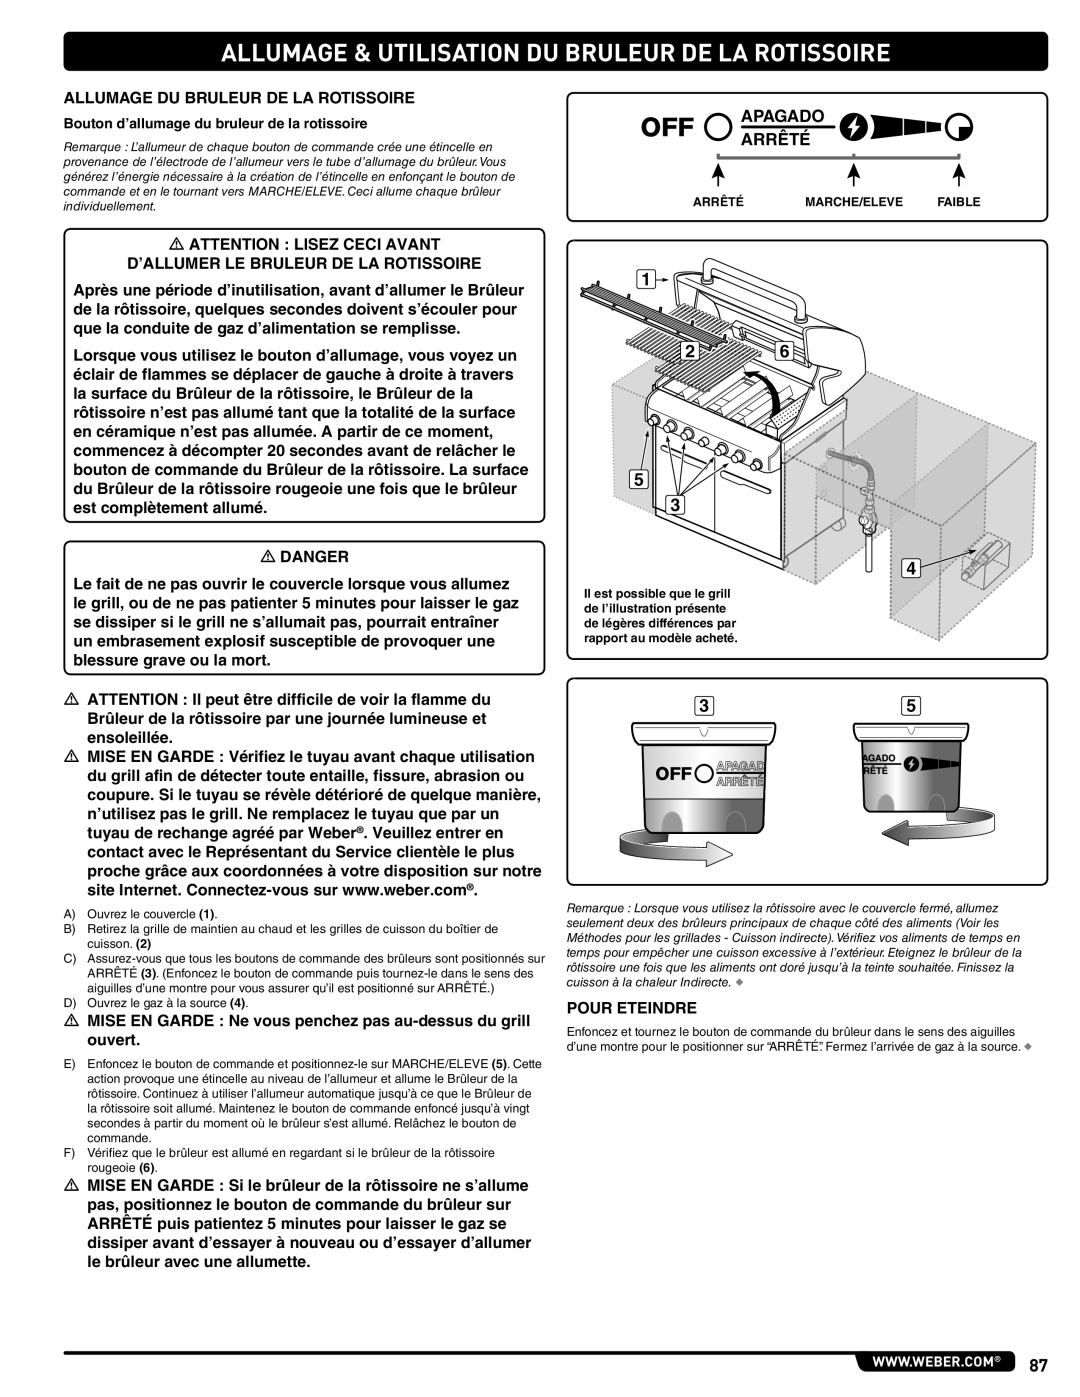 Weber 56576, Summit Gas Grill manual Allumage & Utilisation Du Bruleur De La Rotissoire, Apagado Arrêté 